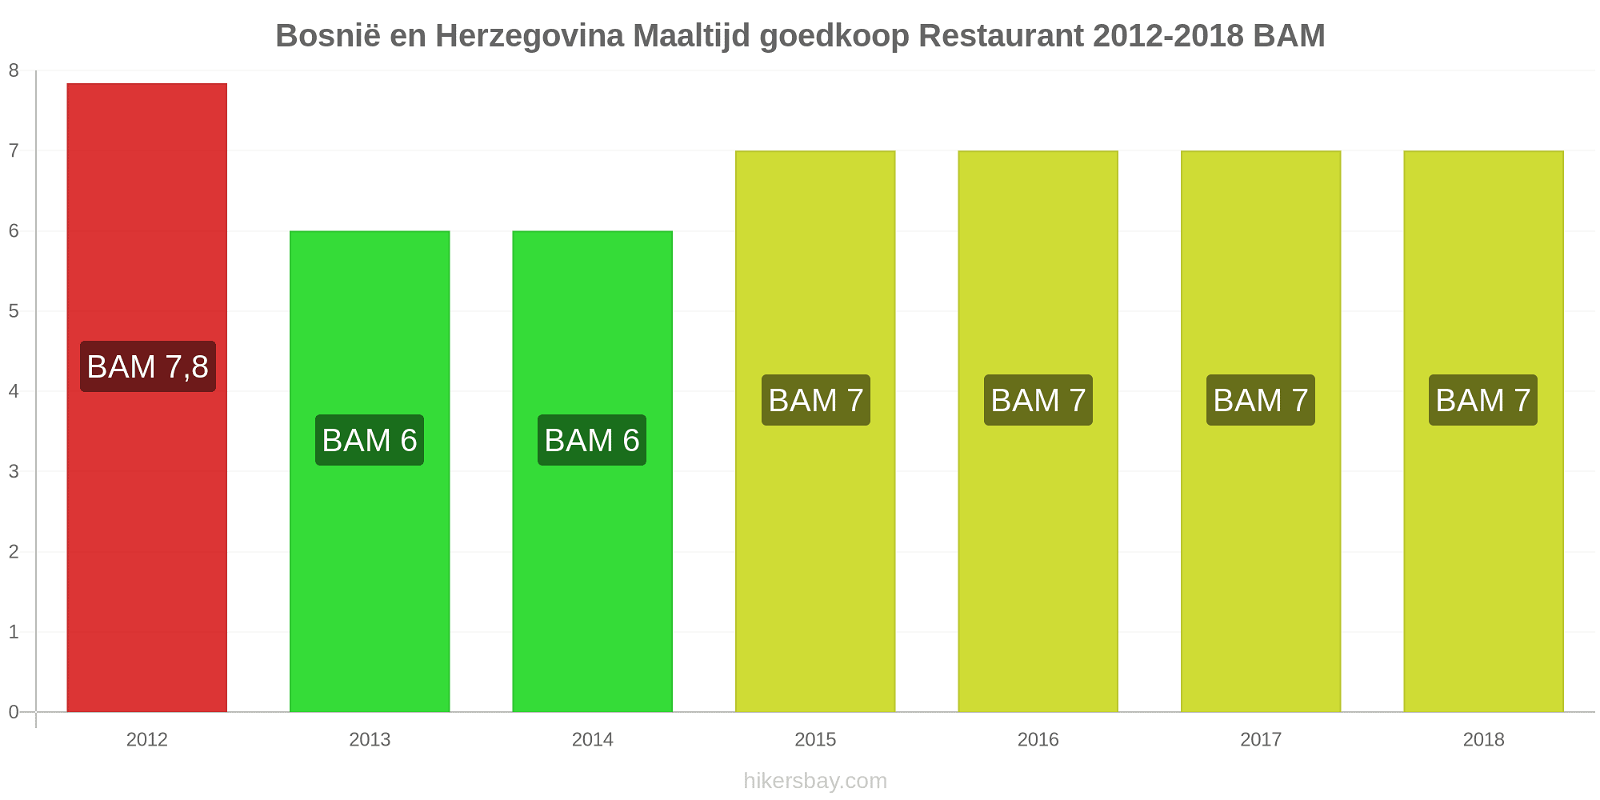 Bosnië en Herzegovina prijswijzigingen Maaltijd in een goedkoop restaurant hikersbay.com